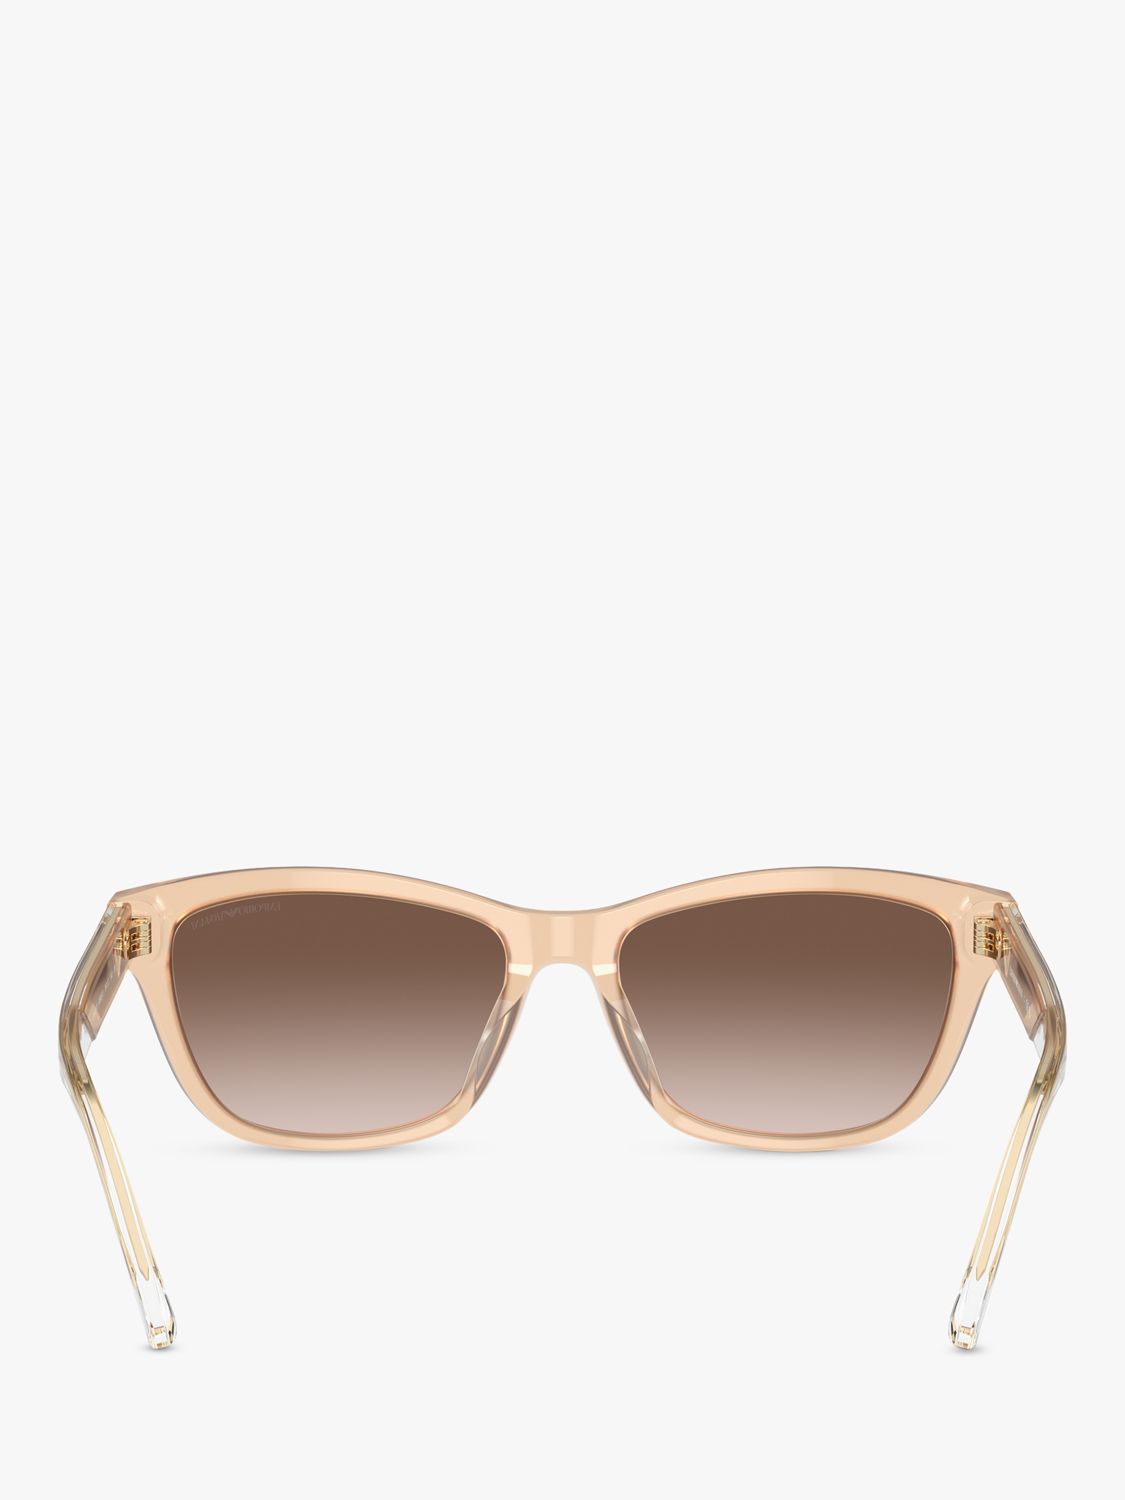 Emporio Armani EA4227U Women's Square Sunglasses, Opaline Tundra/Brown Gradient